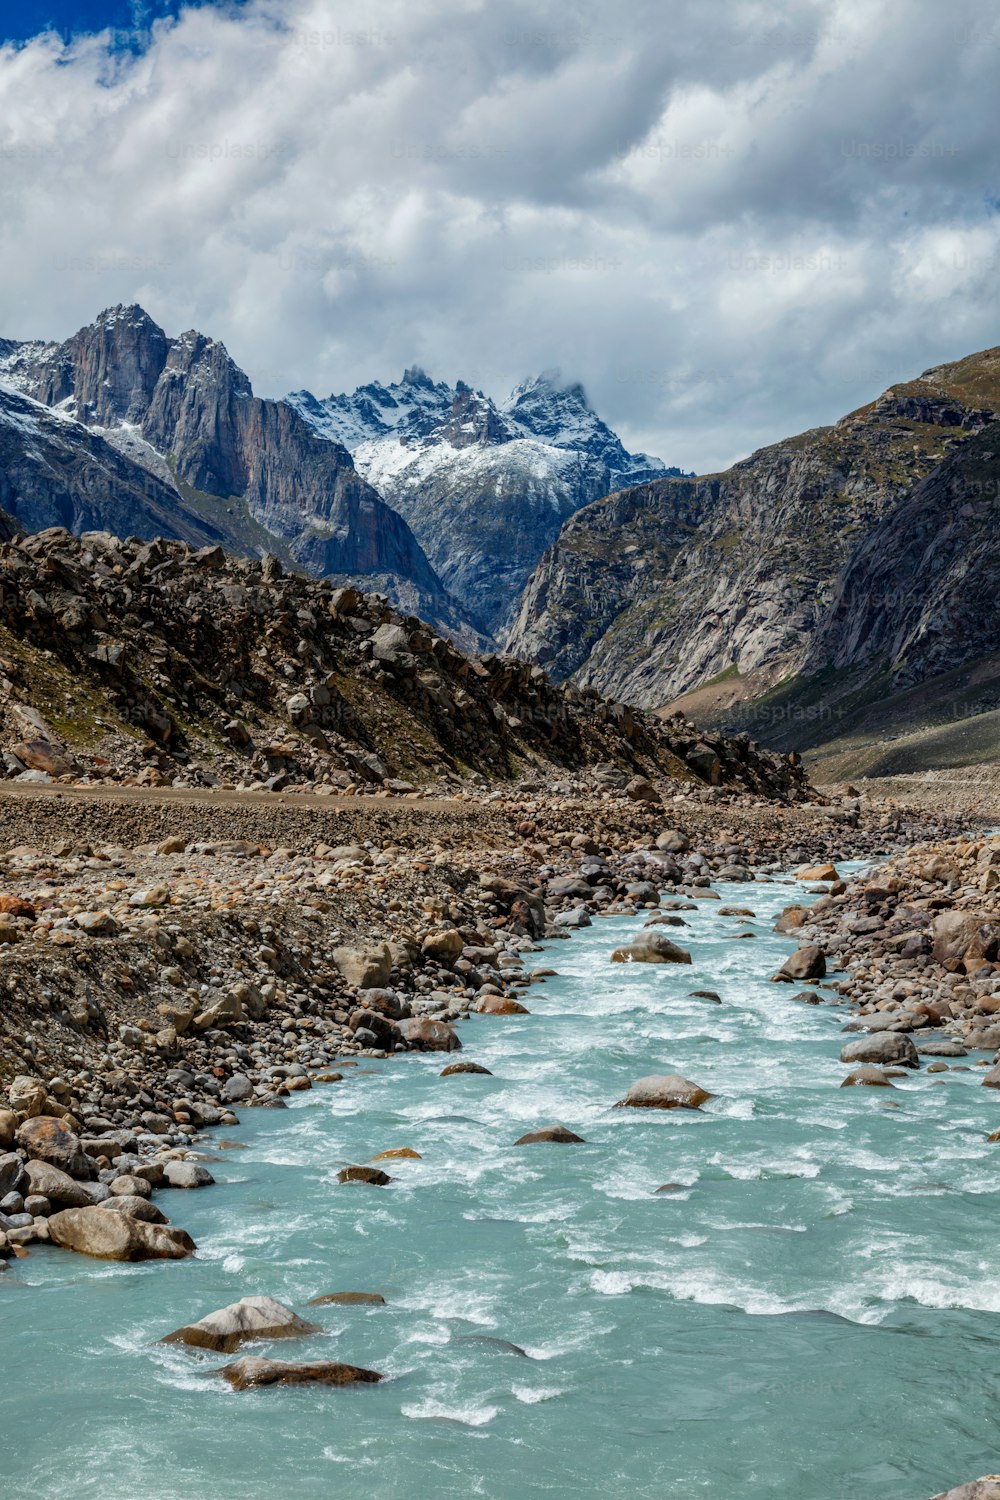 Río Chandra en el valle de Lahaul en el Himalaya indio. Himachal Pradesh, India India